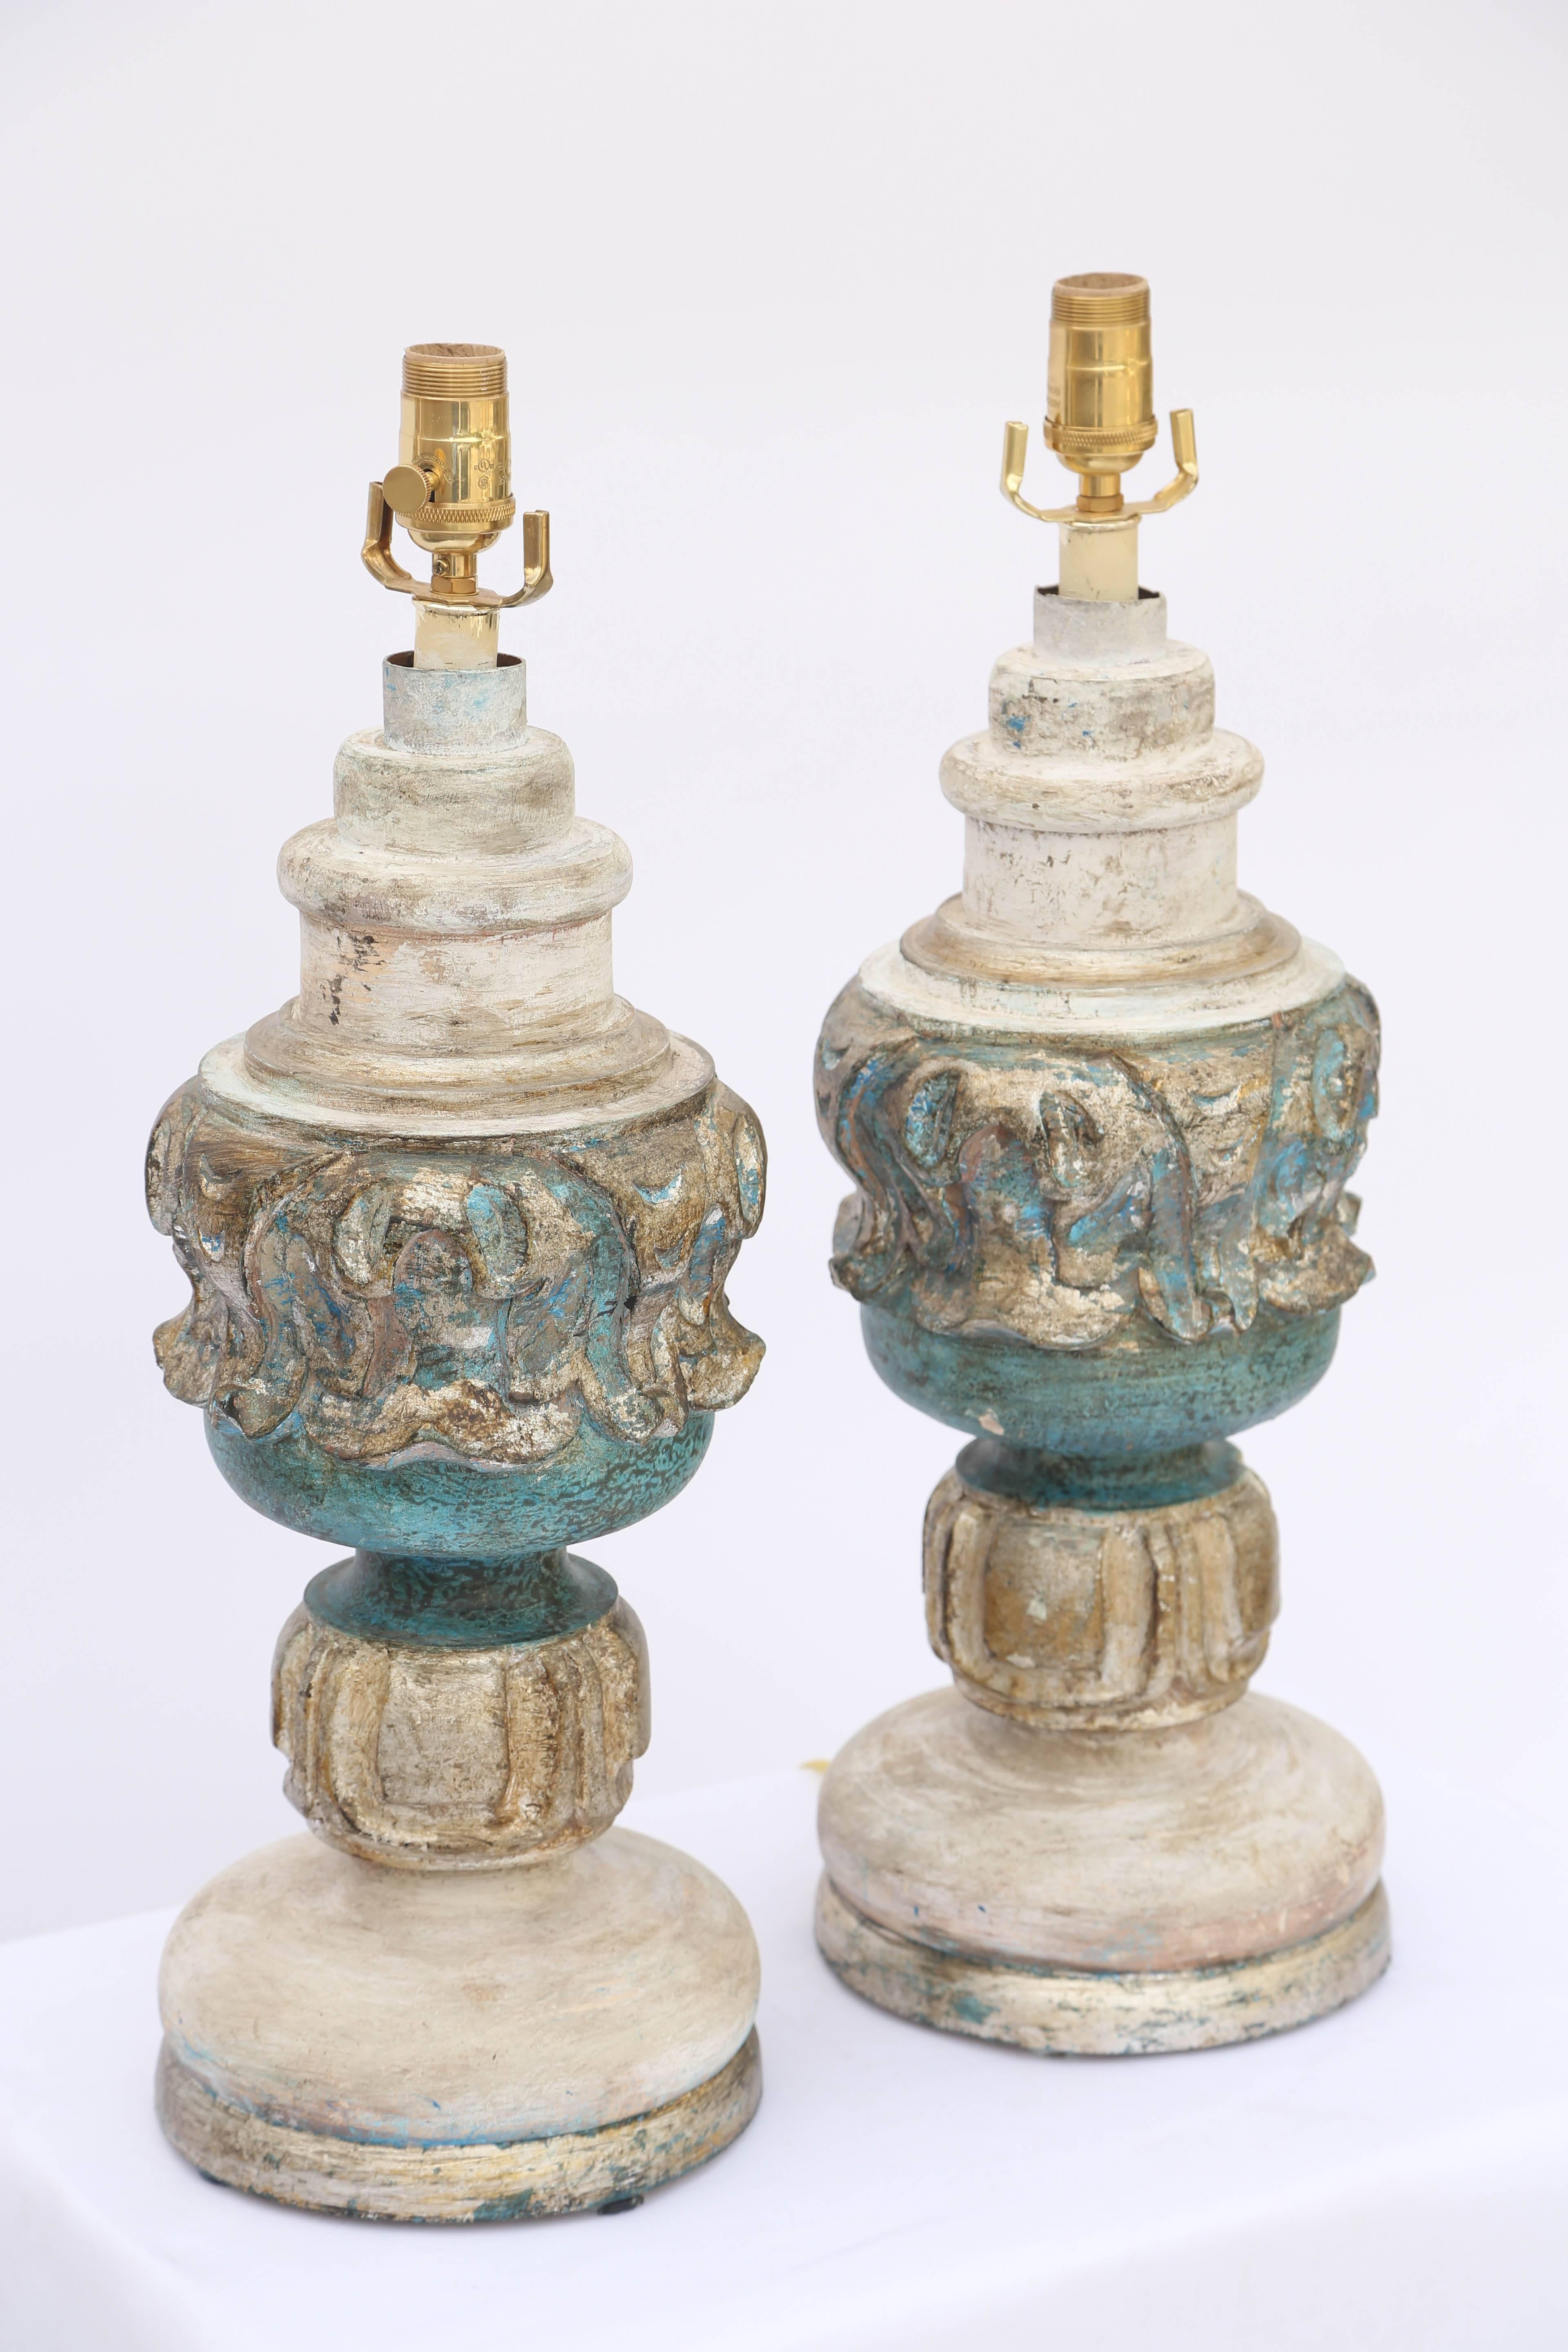 Paire de lampes de table, peintes et dorées à la feuille, chaque corps en forme d'urne décorée de sculptures classiques, reposant sur un pied rond étagé.

Stock ID : D6459